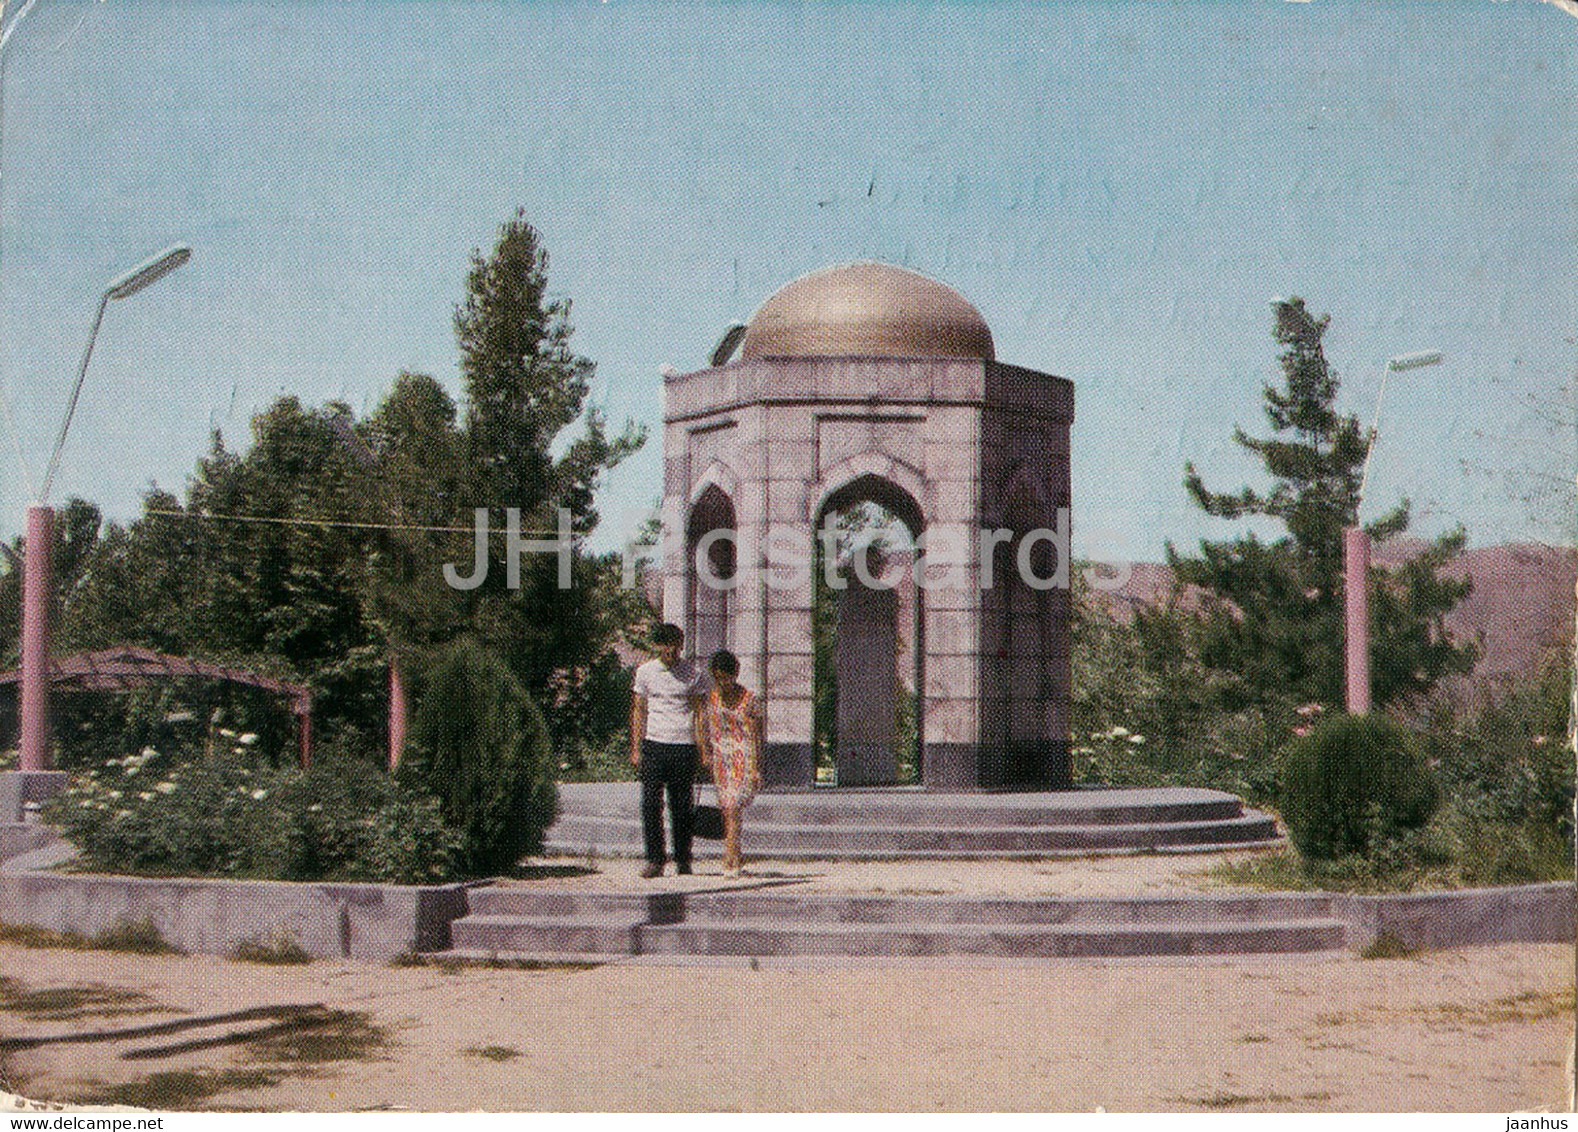 Dushanbe - Ayni Park - Postal Stationery - 1973 - Tajikistan USSR - Used - Tadjikistan